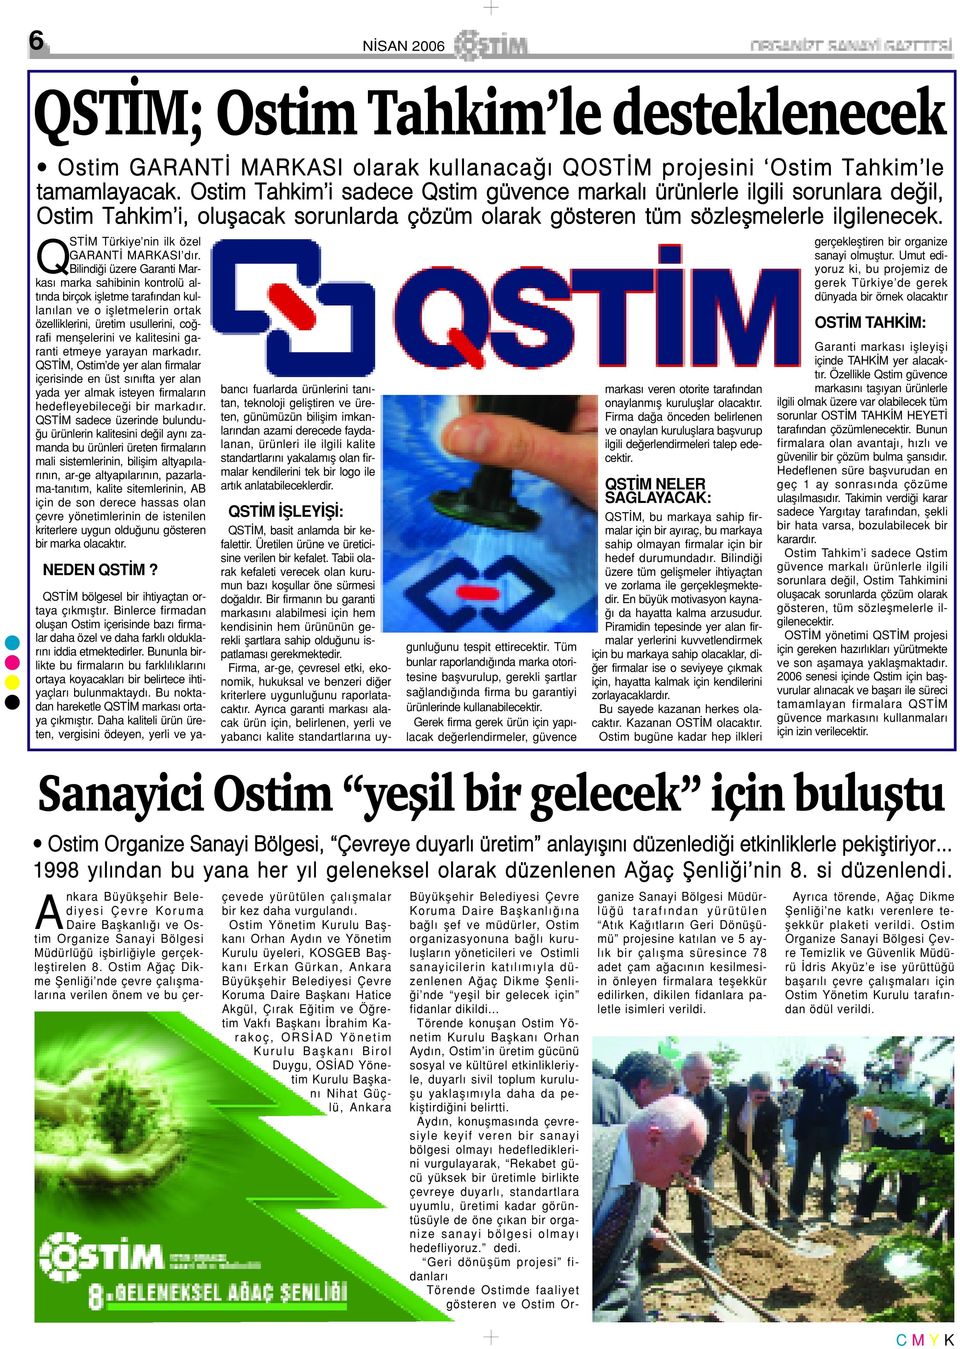 Q ST M Türkiye nin ilk özel GARANT MARKASI d r.